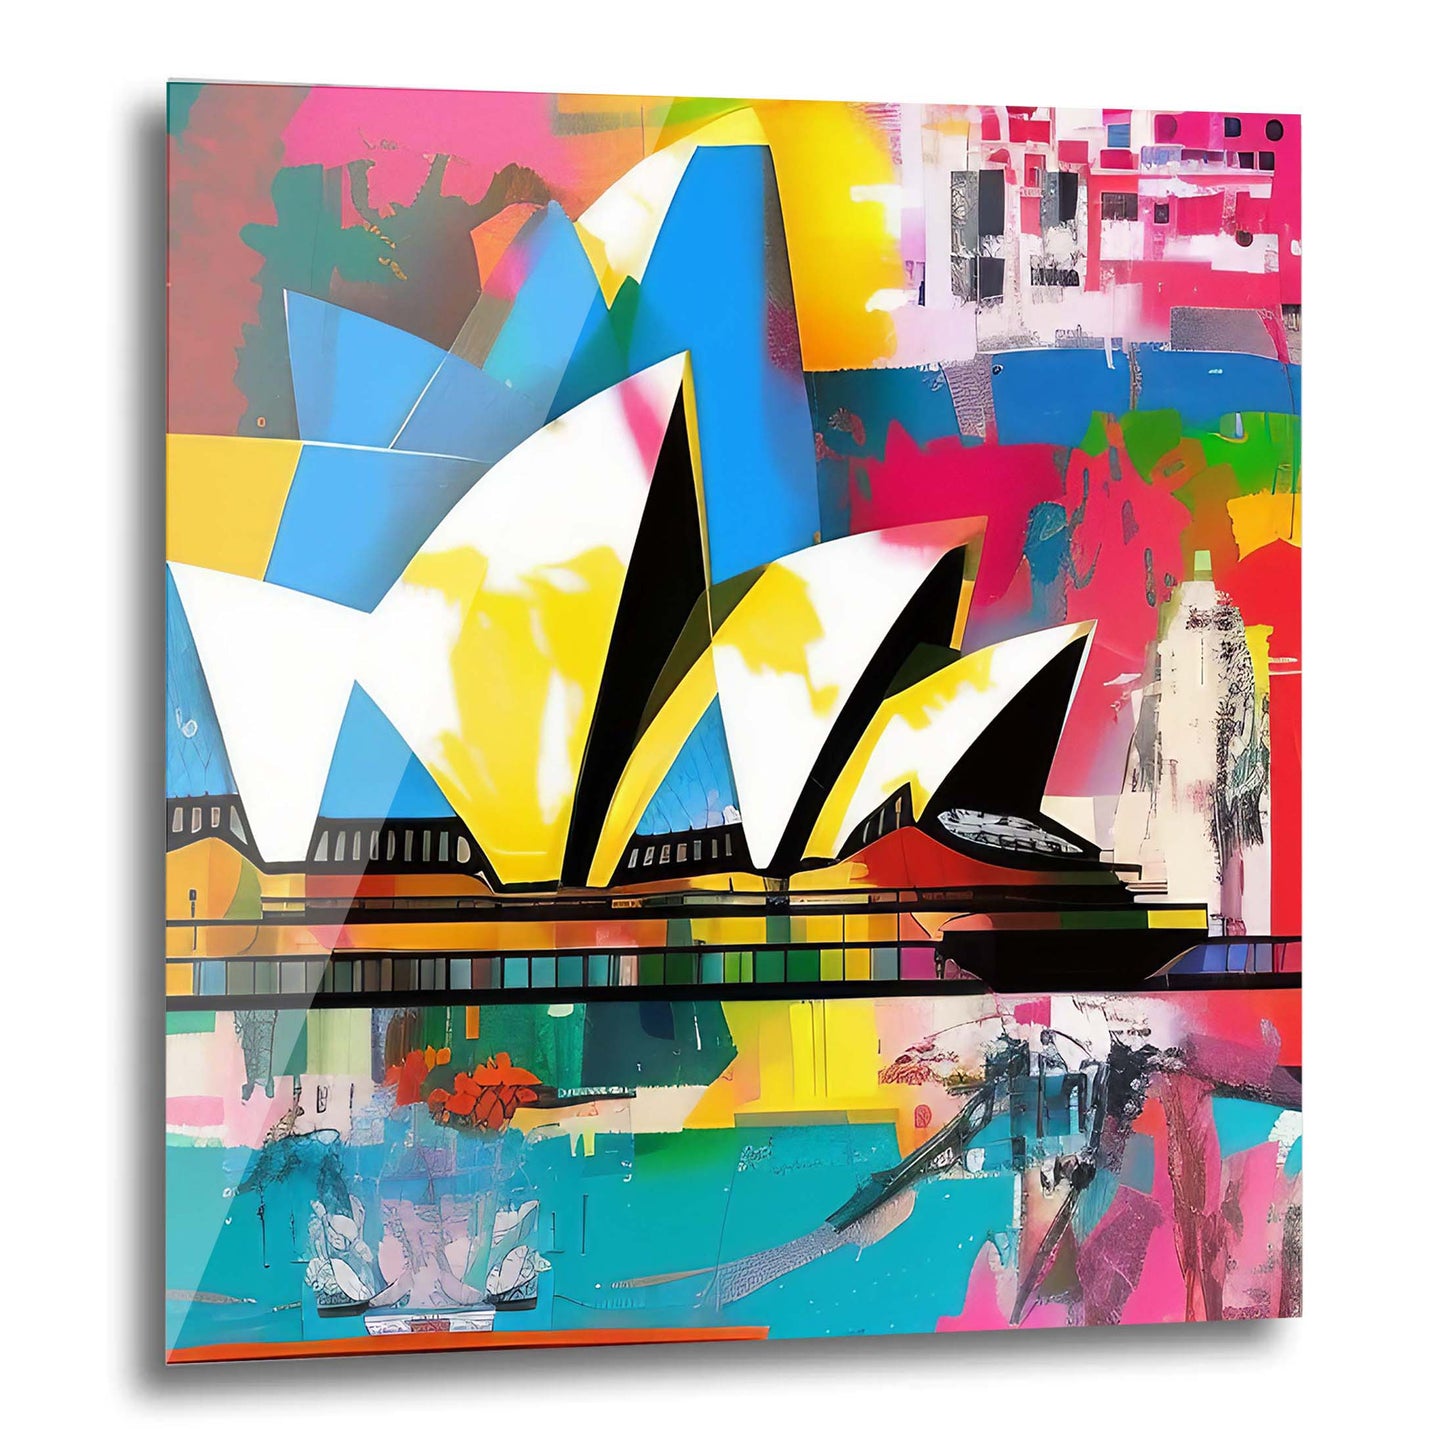 Sydney - Opera House - mural in pop art style